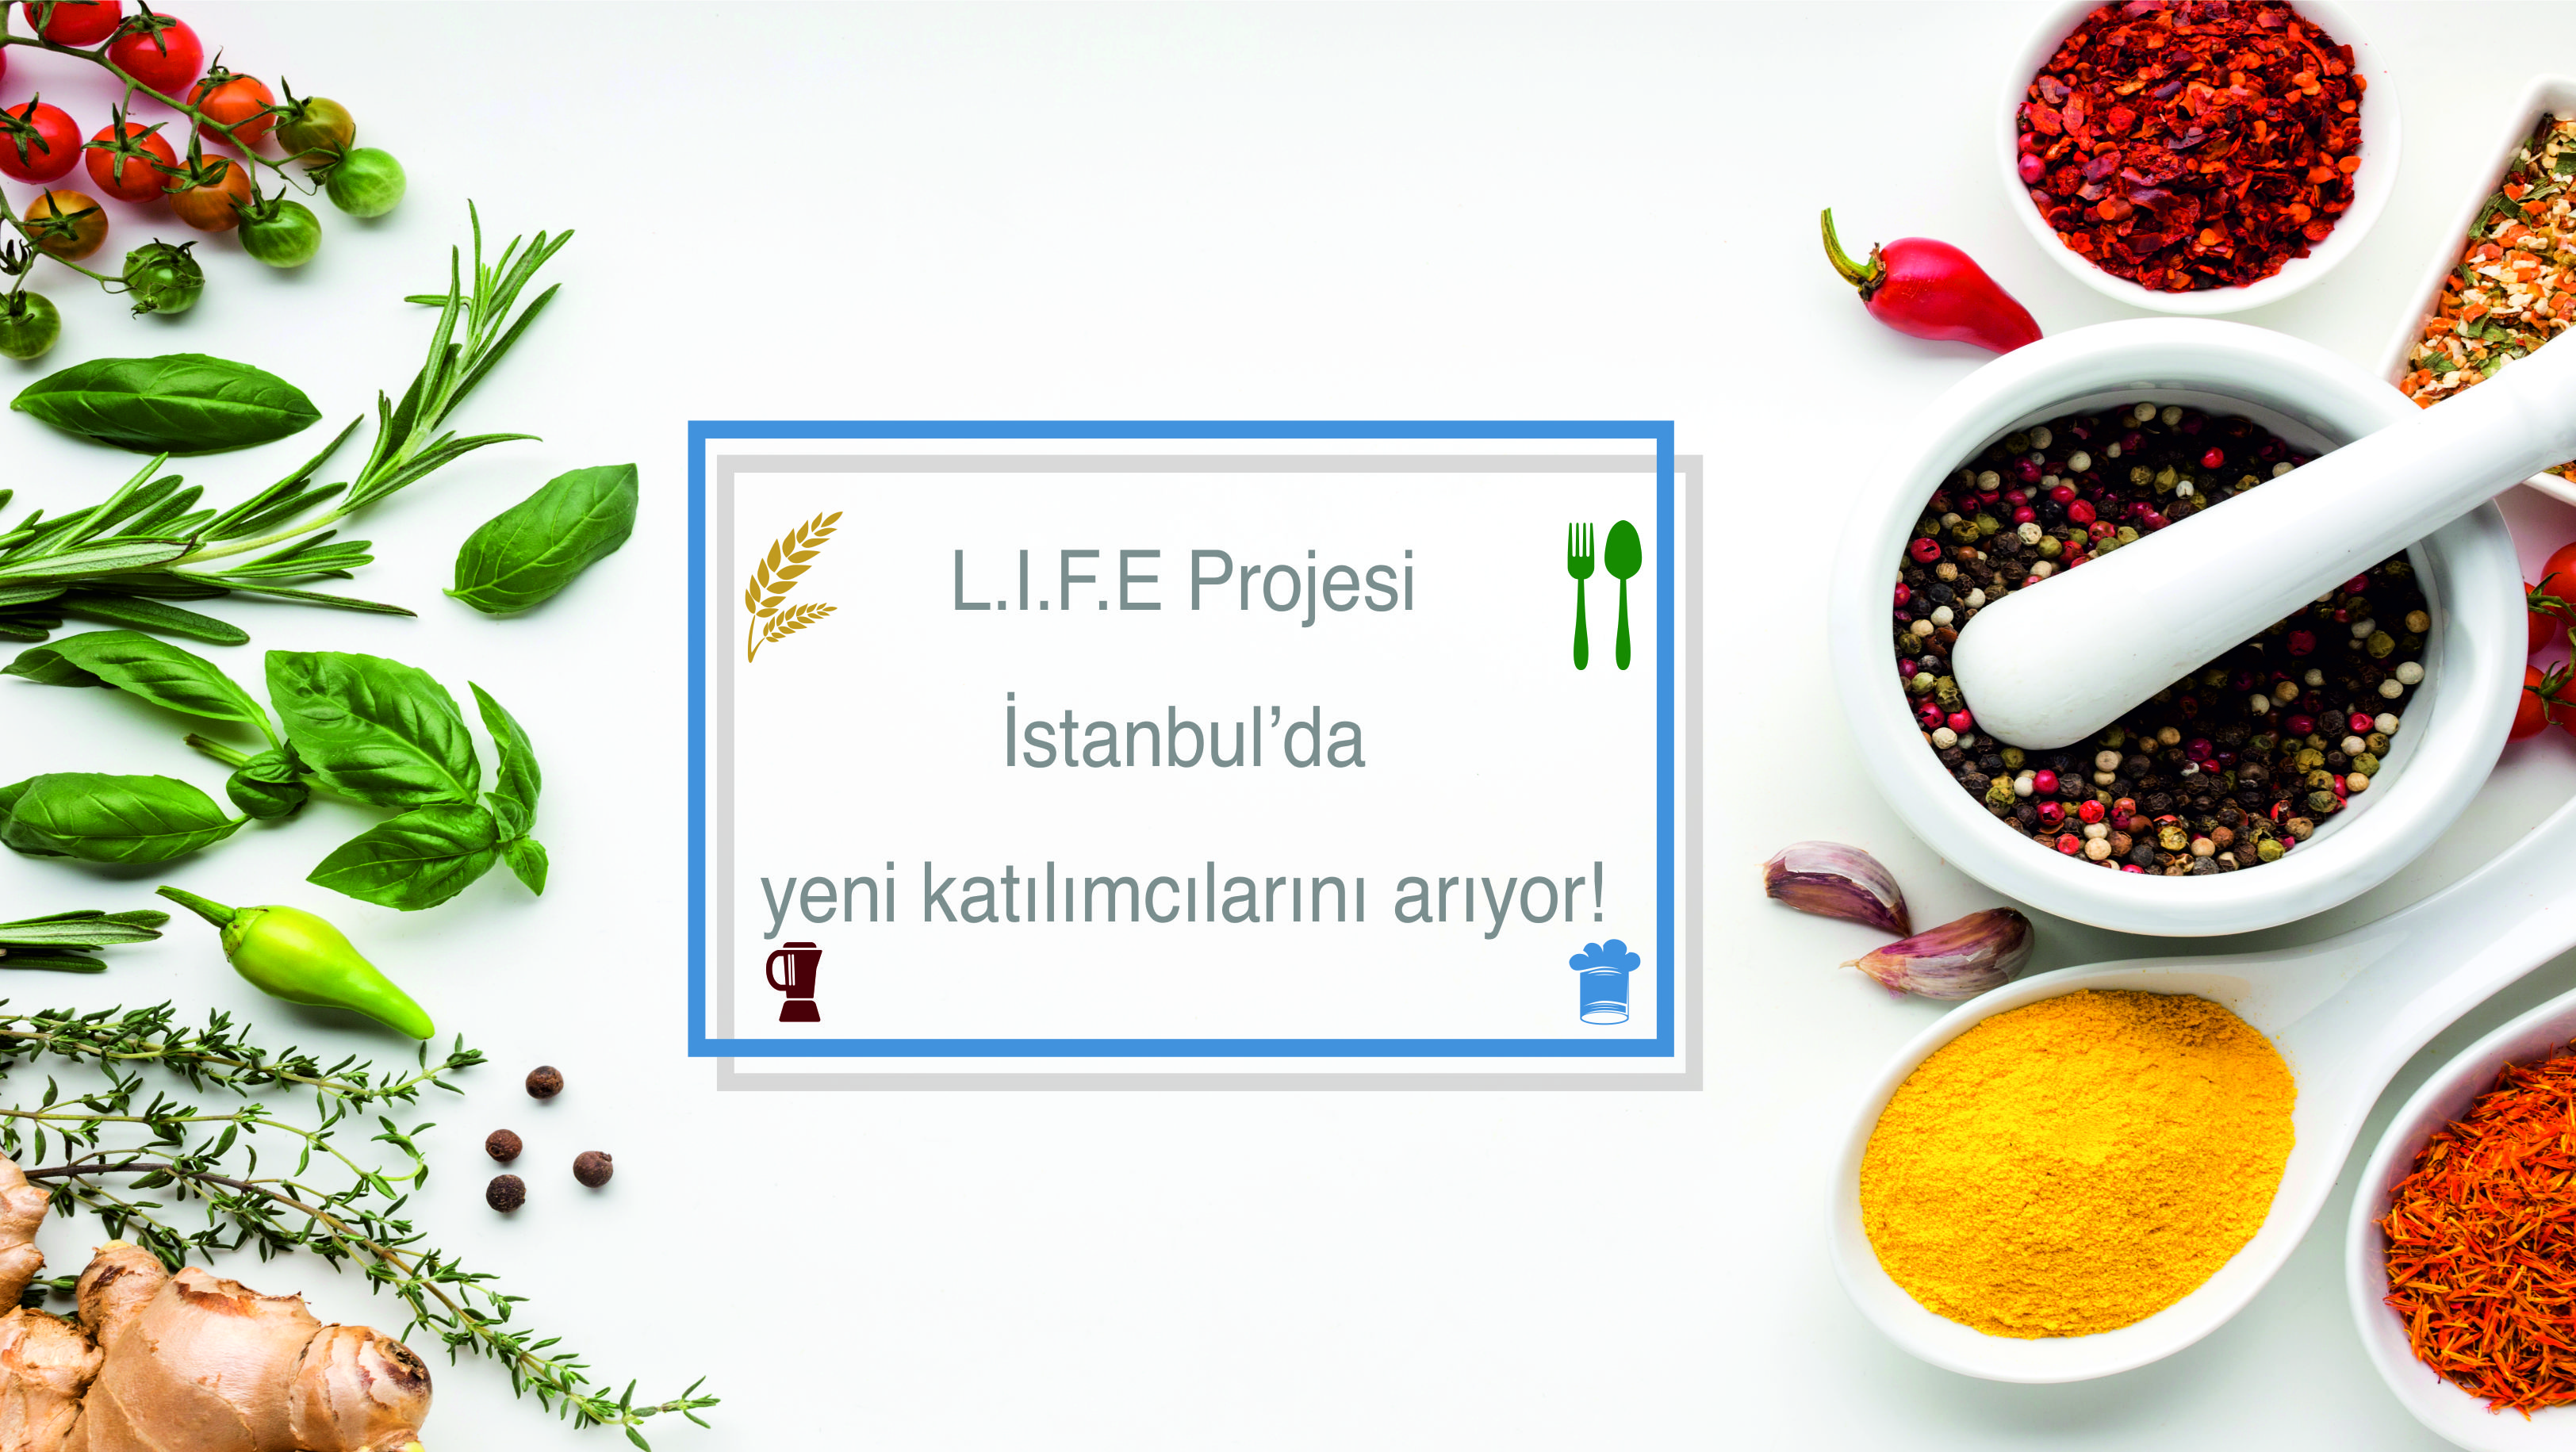 L.I.F.E (Gıda Girişimciliği ile Yenilikçi Geçim Kaynakları) Projesi, İstanbul’da yeni dönem katılımcılarını arıyor!